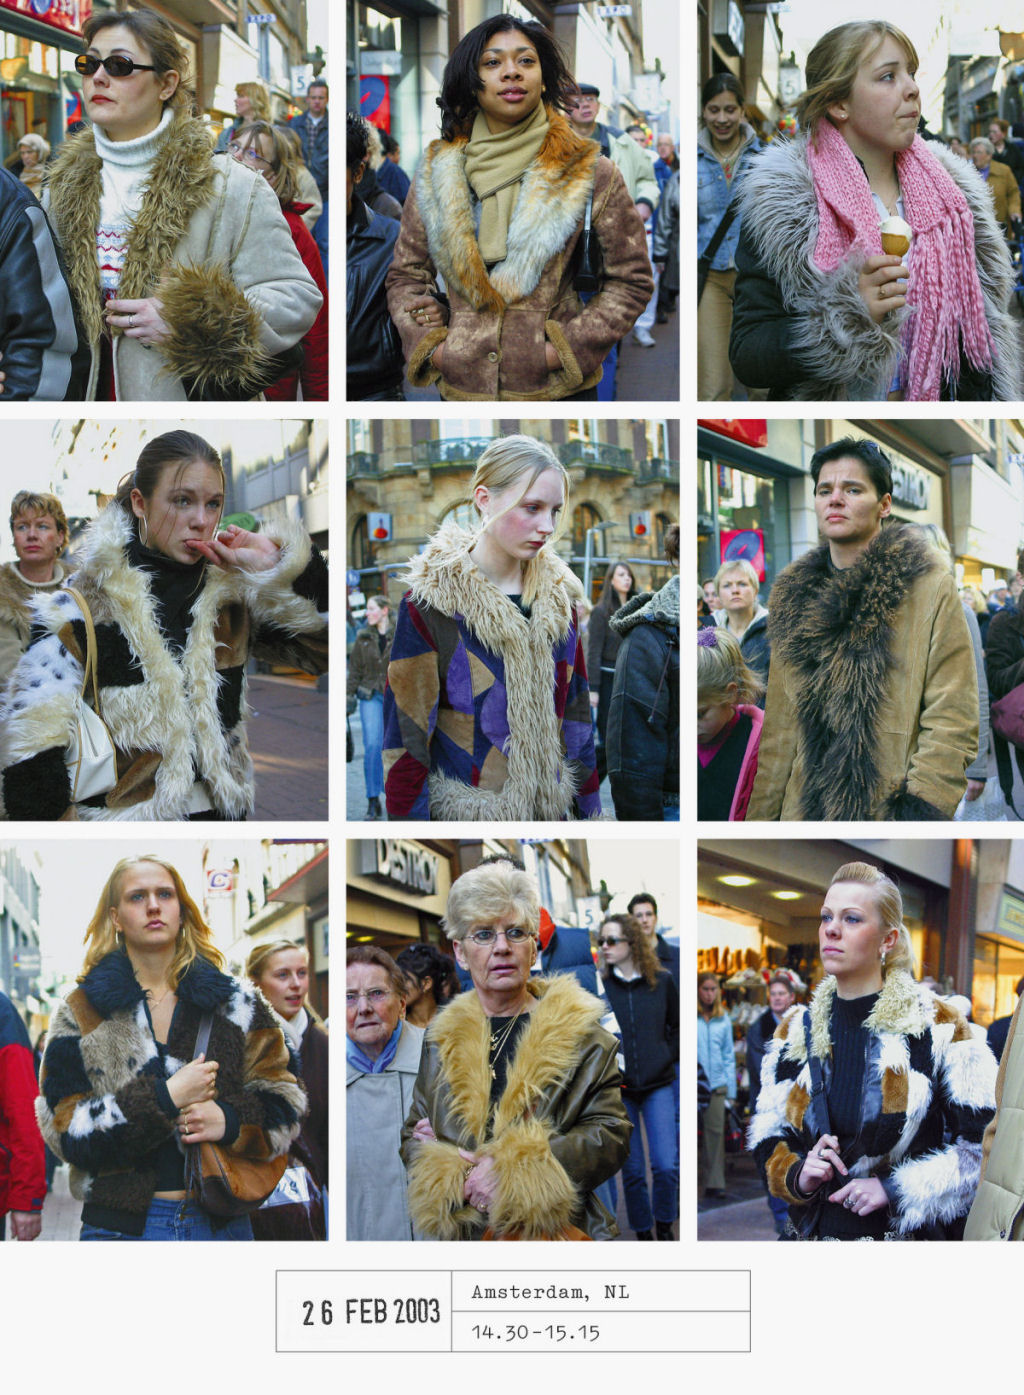 Este fotógrafo passou 20 anos documentando como todos nos vestimos iguais 14